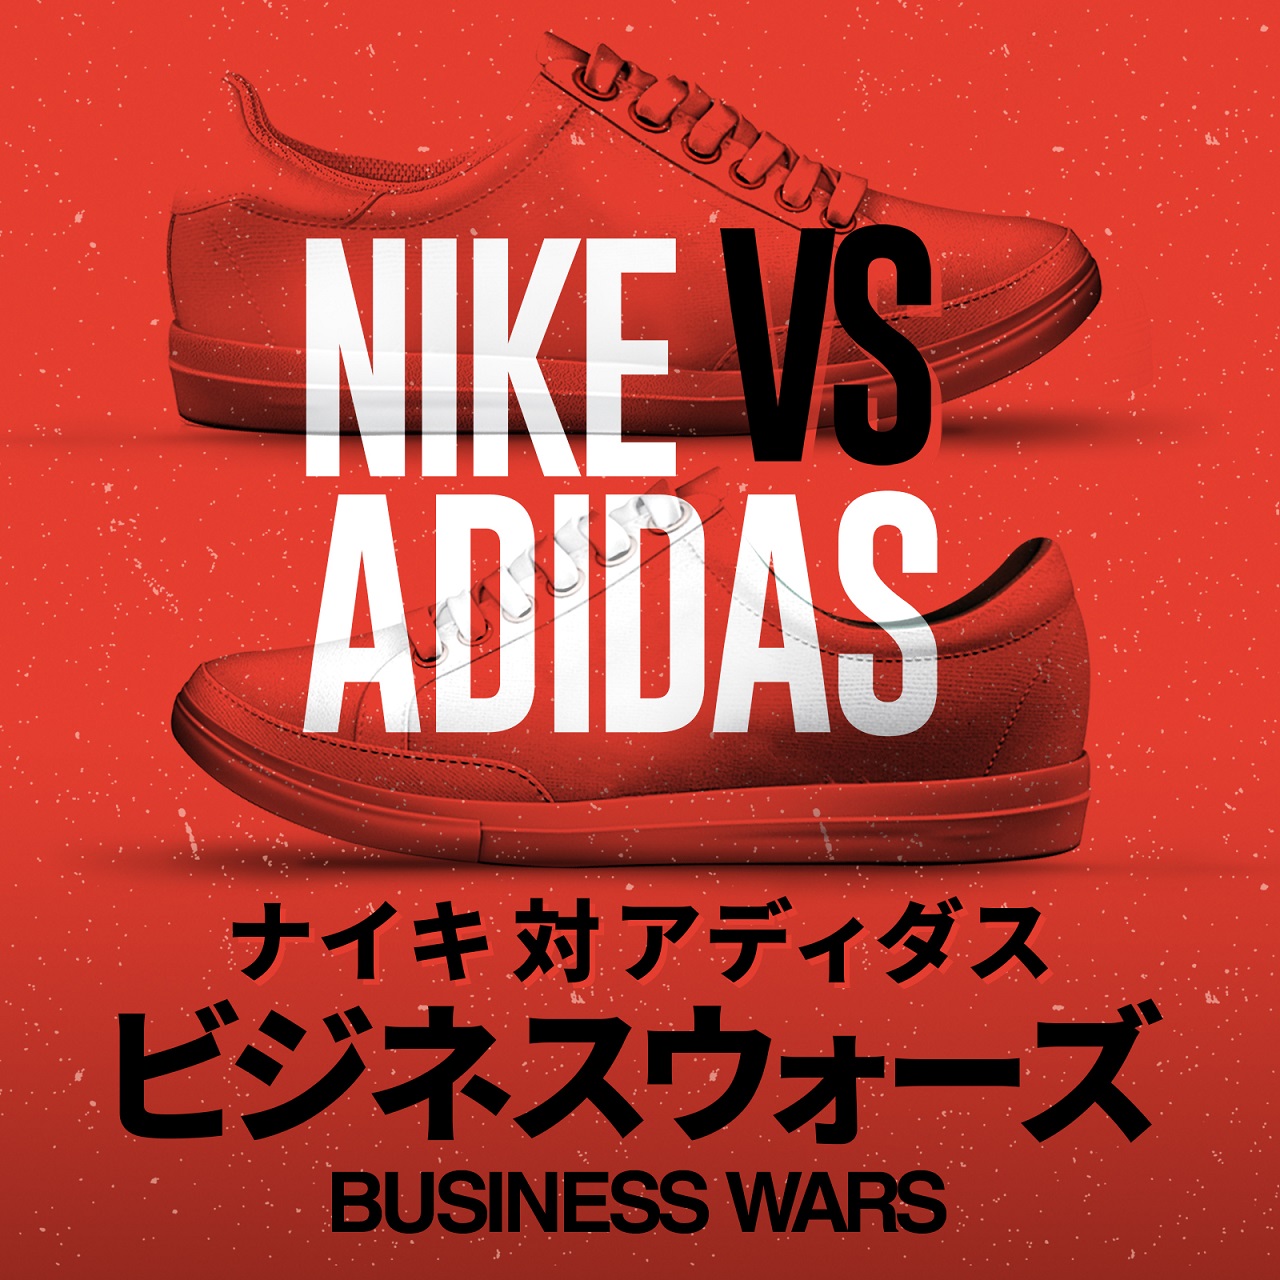 スニーカーを巨大ビジネスに成長させたライバル社の戦い 「ビジネスウォーズ ナイキ対アディダス」